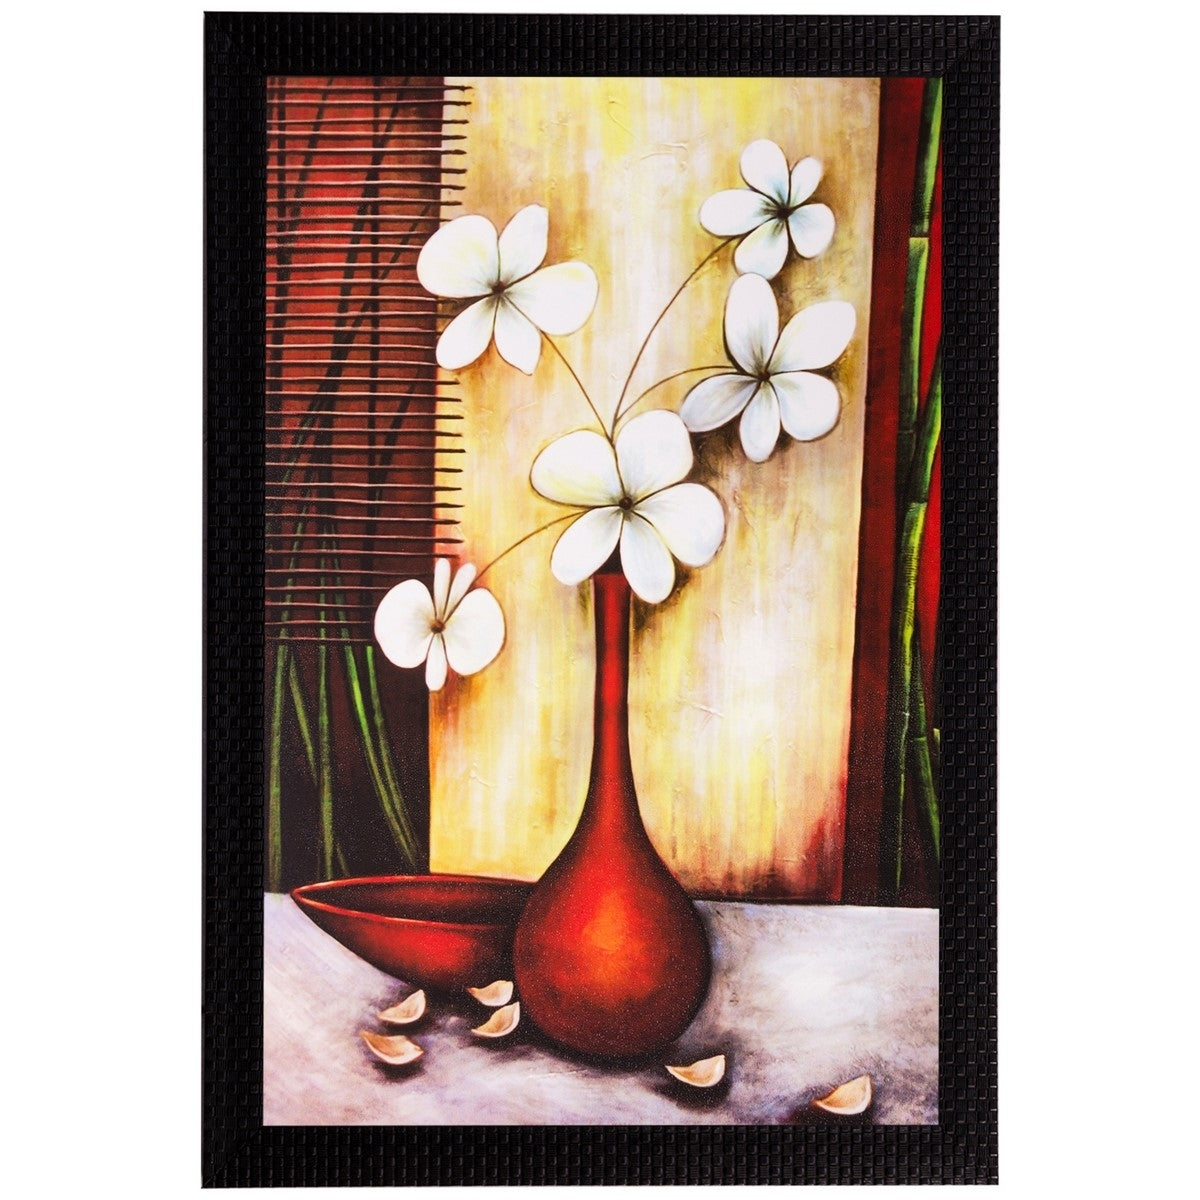 White Flowers and Vase Matt Textured UV Art Painting